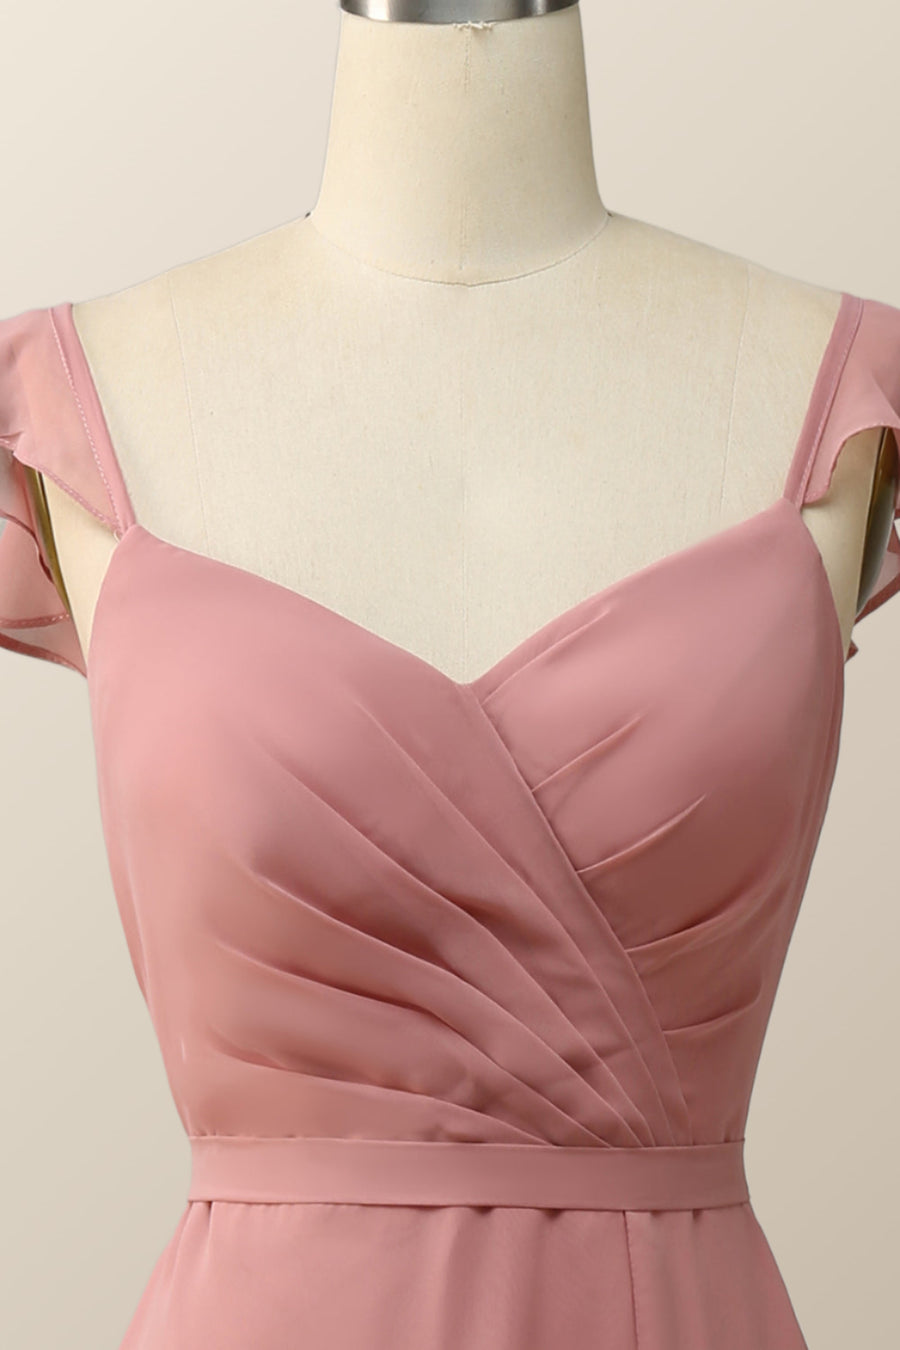 Blush Pink Ruffle Straps Chiffon Long Bridesmaid Dress